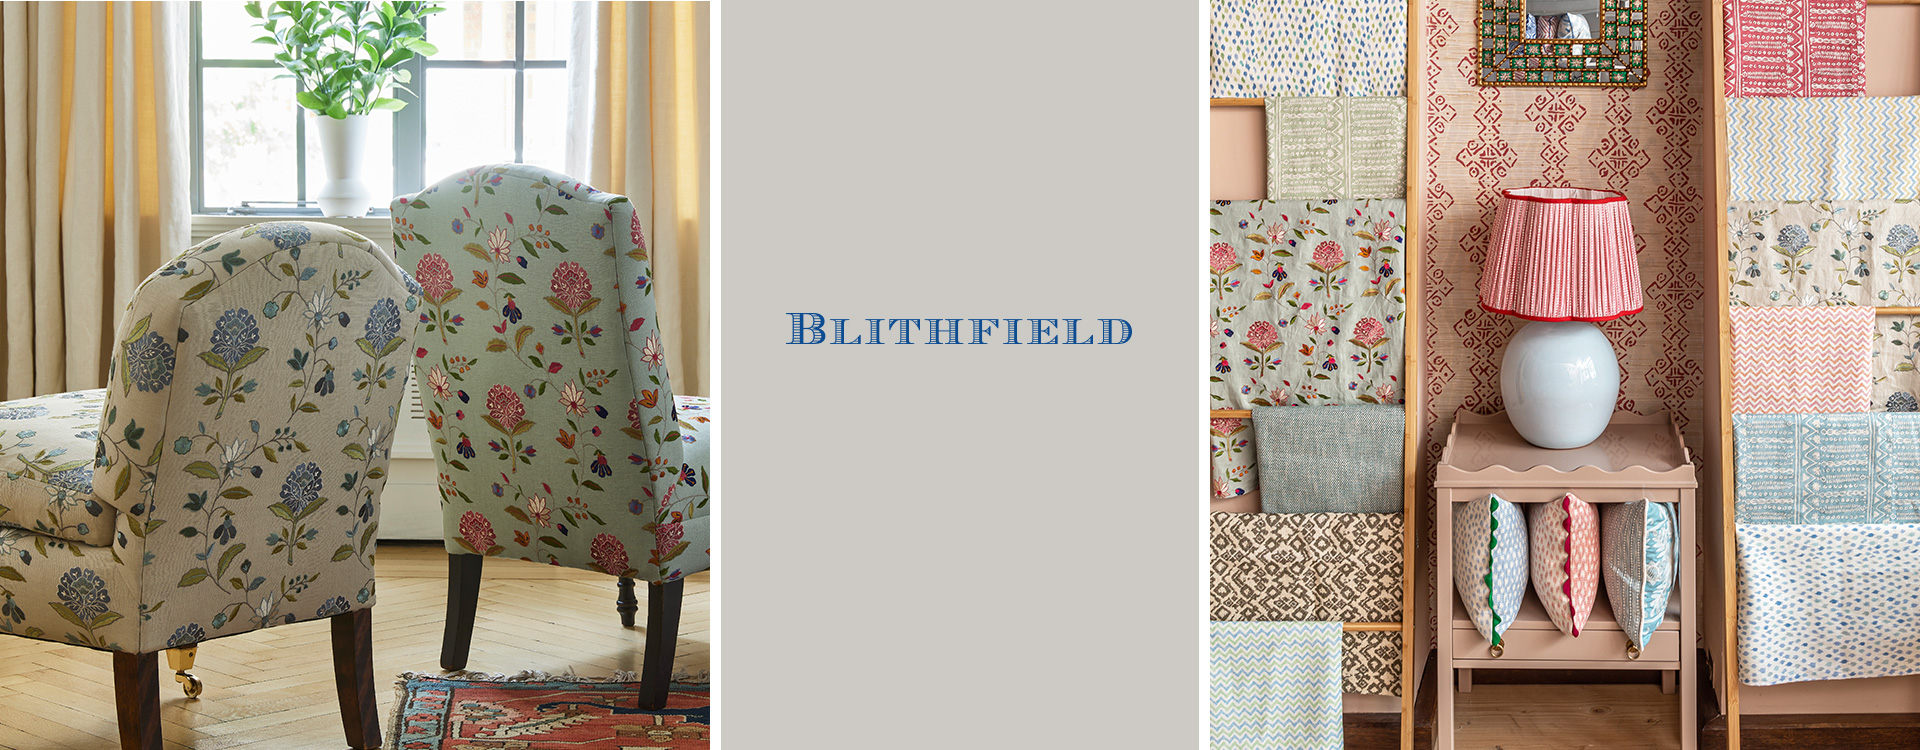 Blithfield